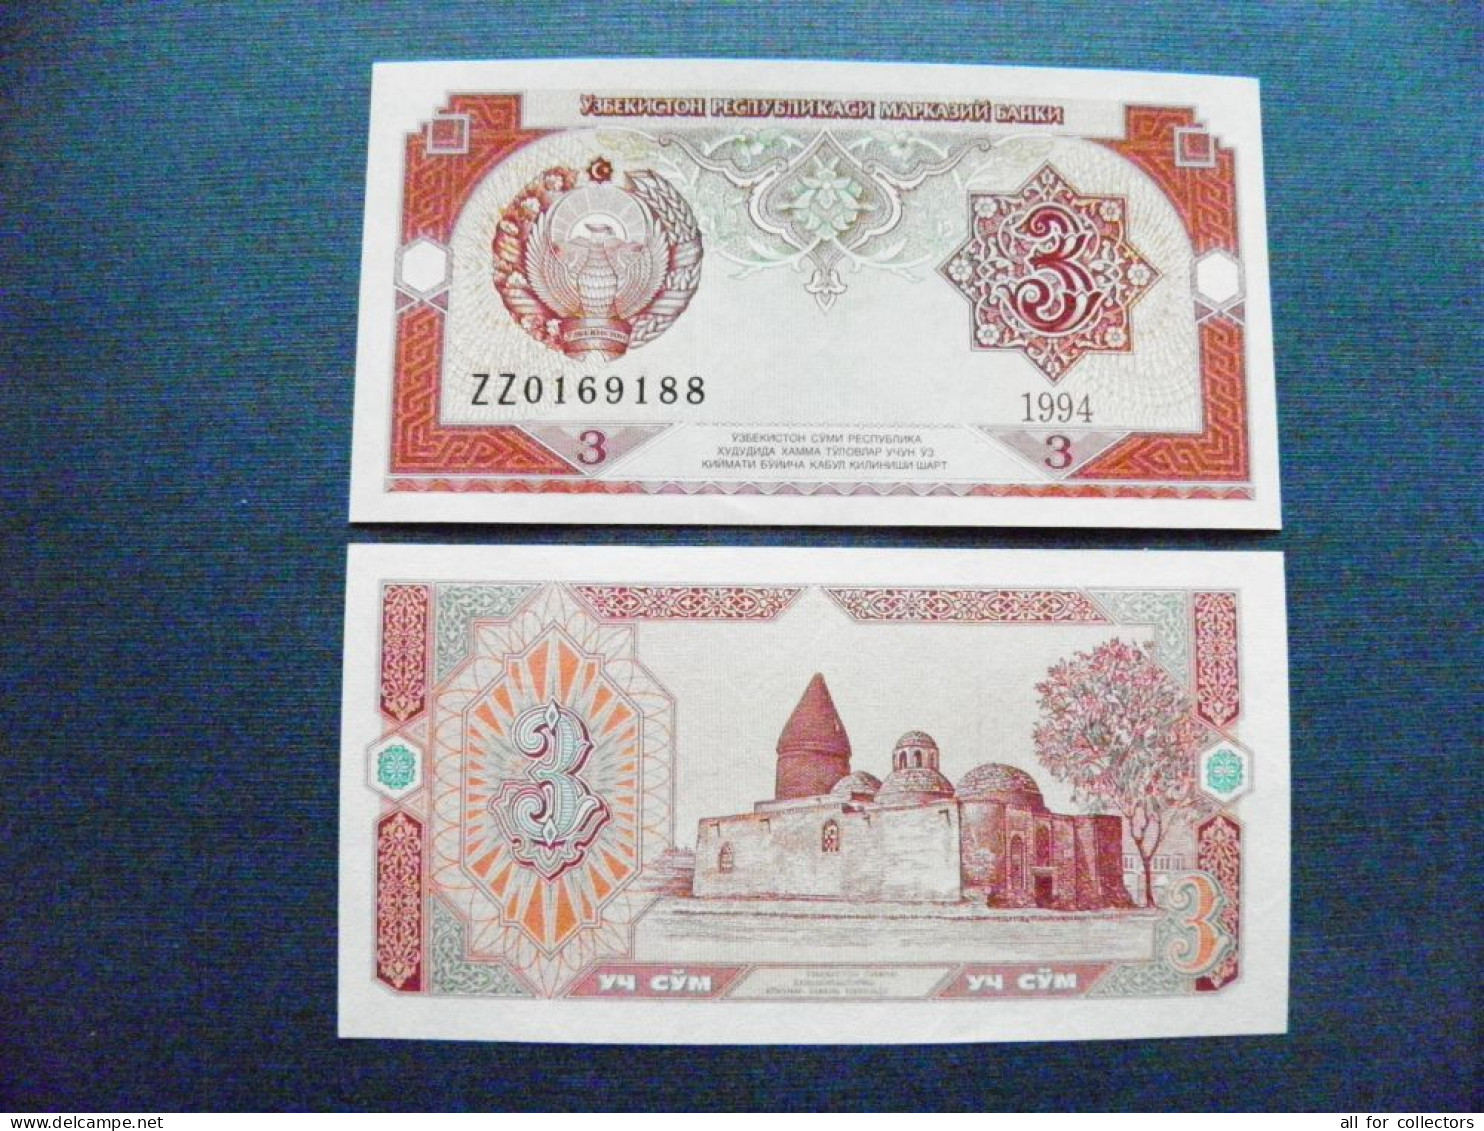 Banknote Uzbekistan Unc 3 Sum 1994 P-74 Coat Of Arms Mosque Bukhara - Ouzbékistan